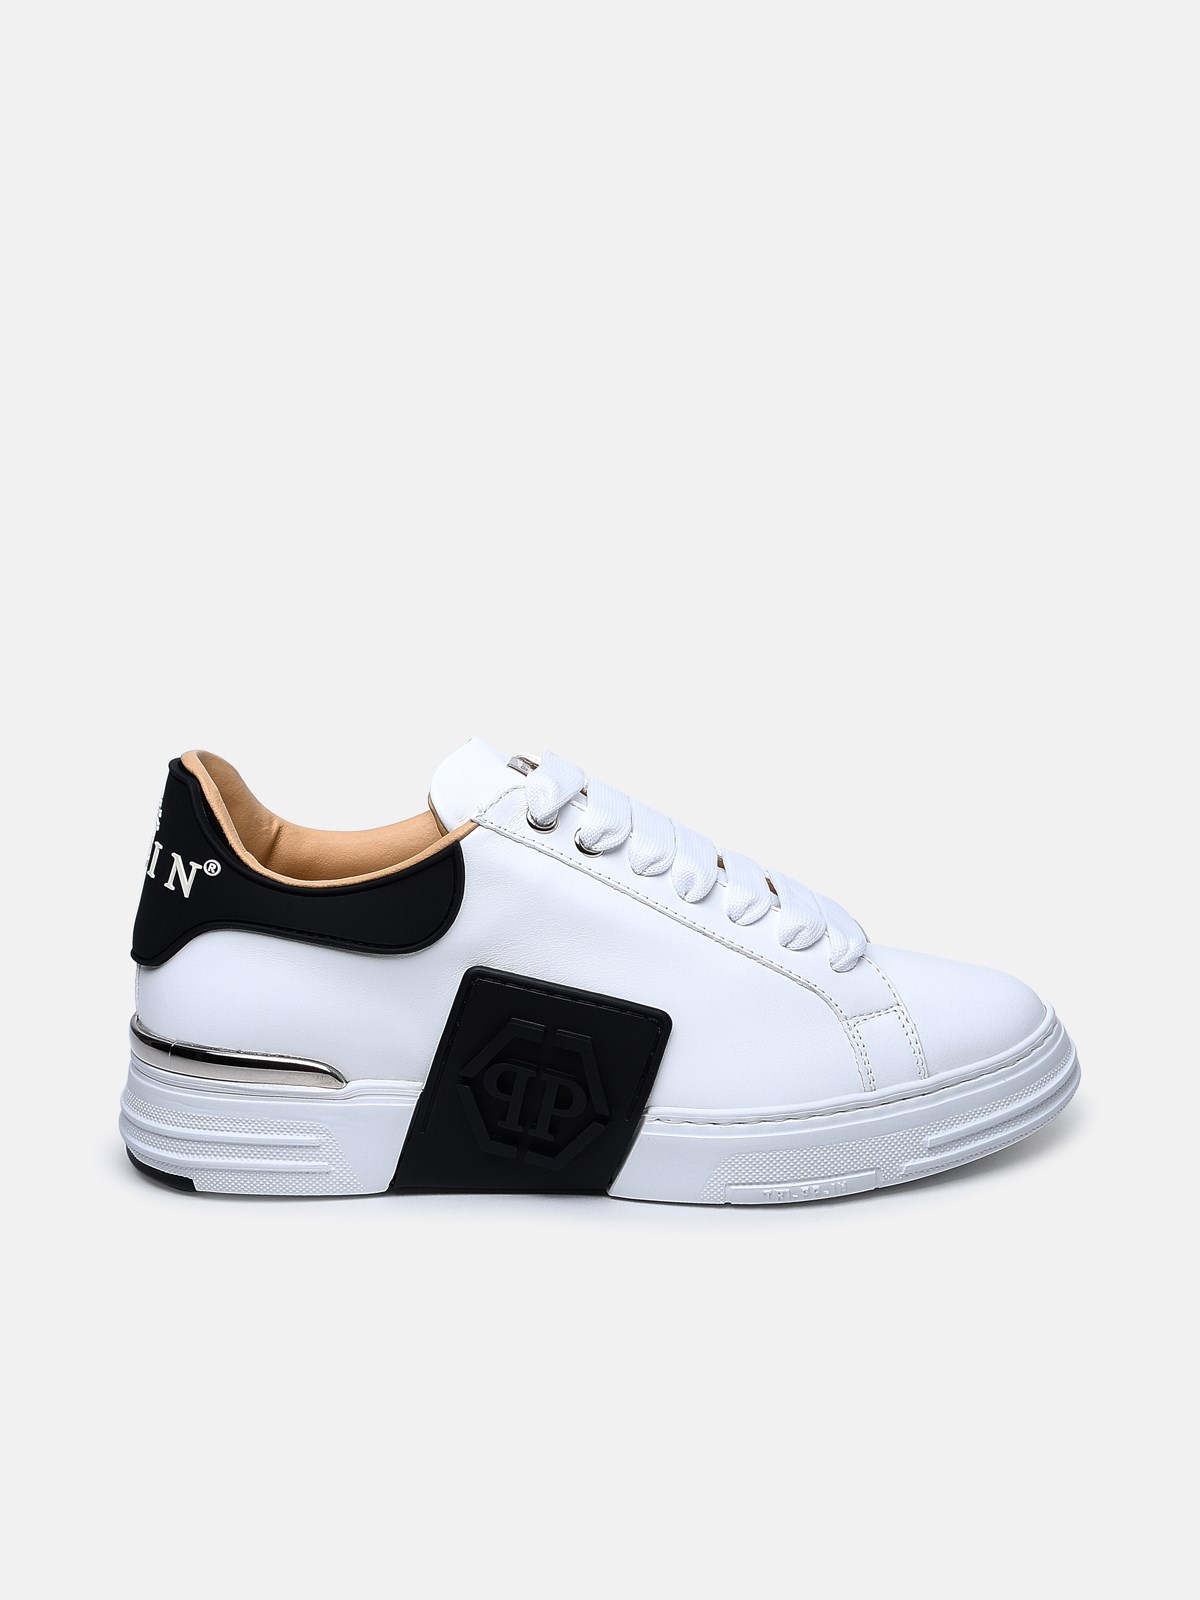 Philipp Plein White Leather Phantom Sneakers